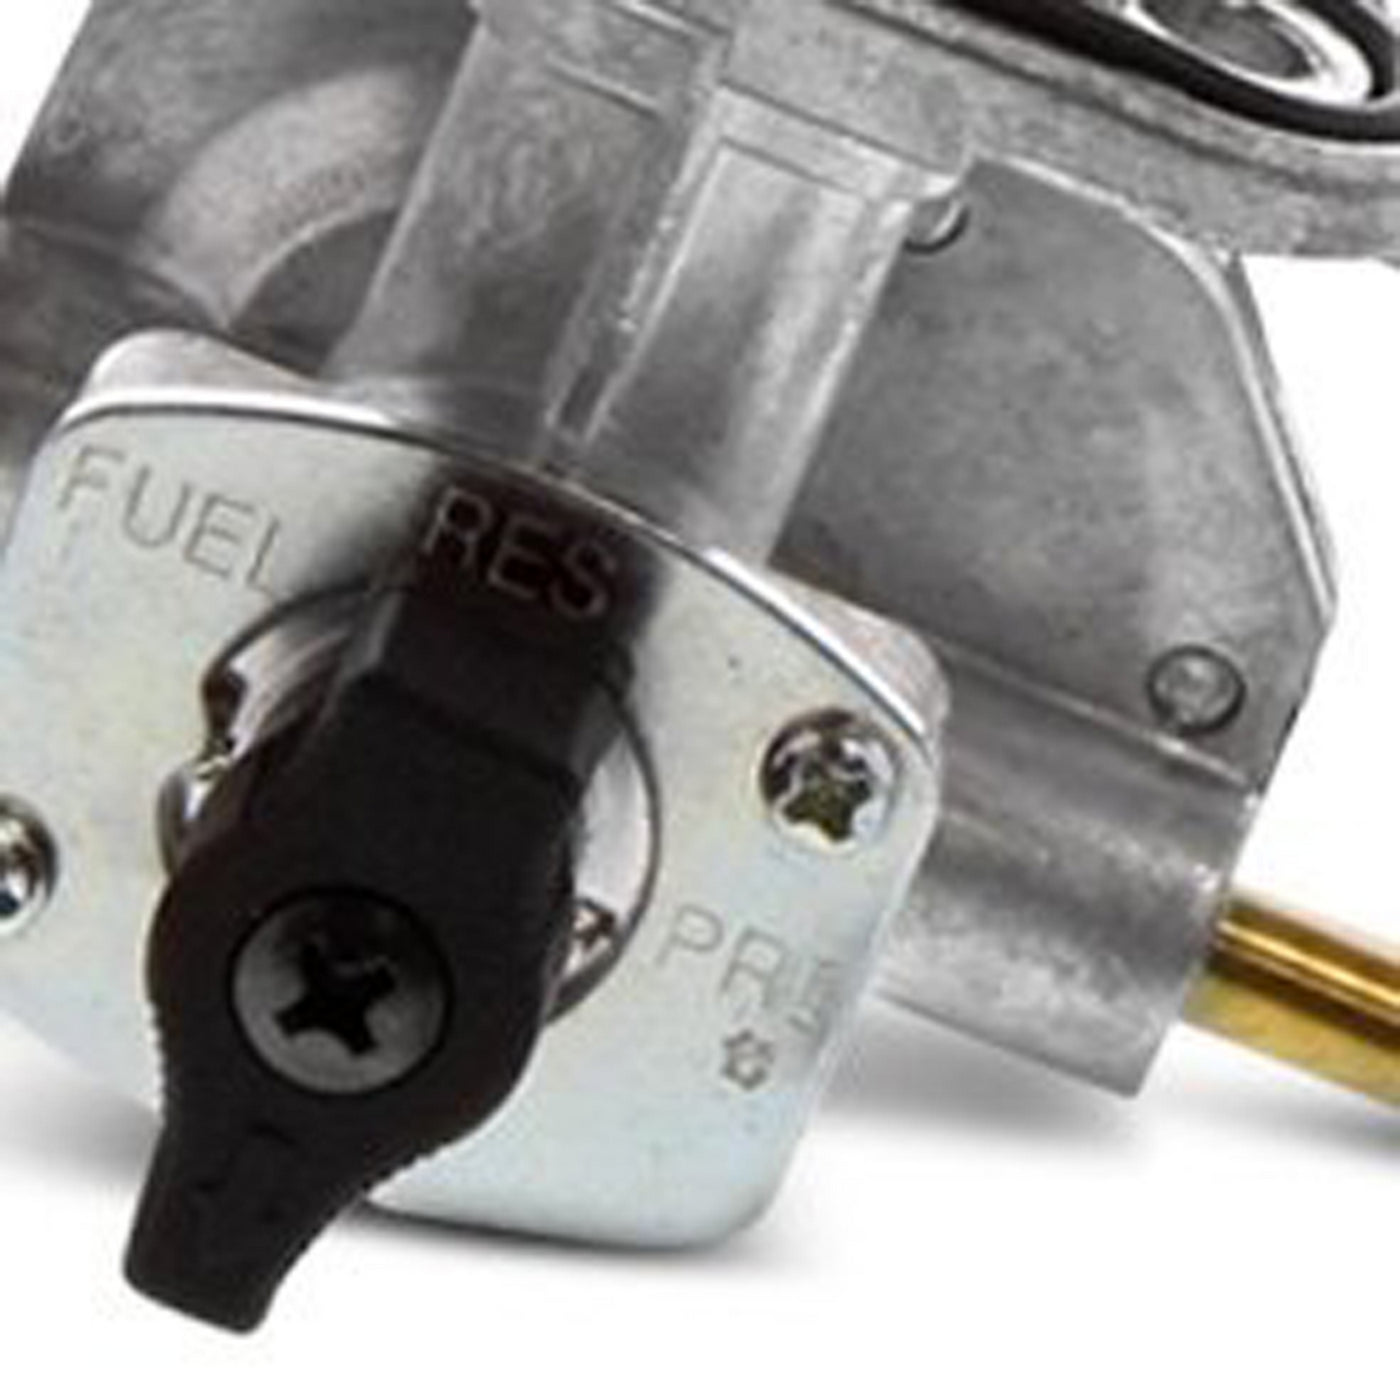 Fuel Star FS101-0106 Fuel Valve Kit #FS101-0106